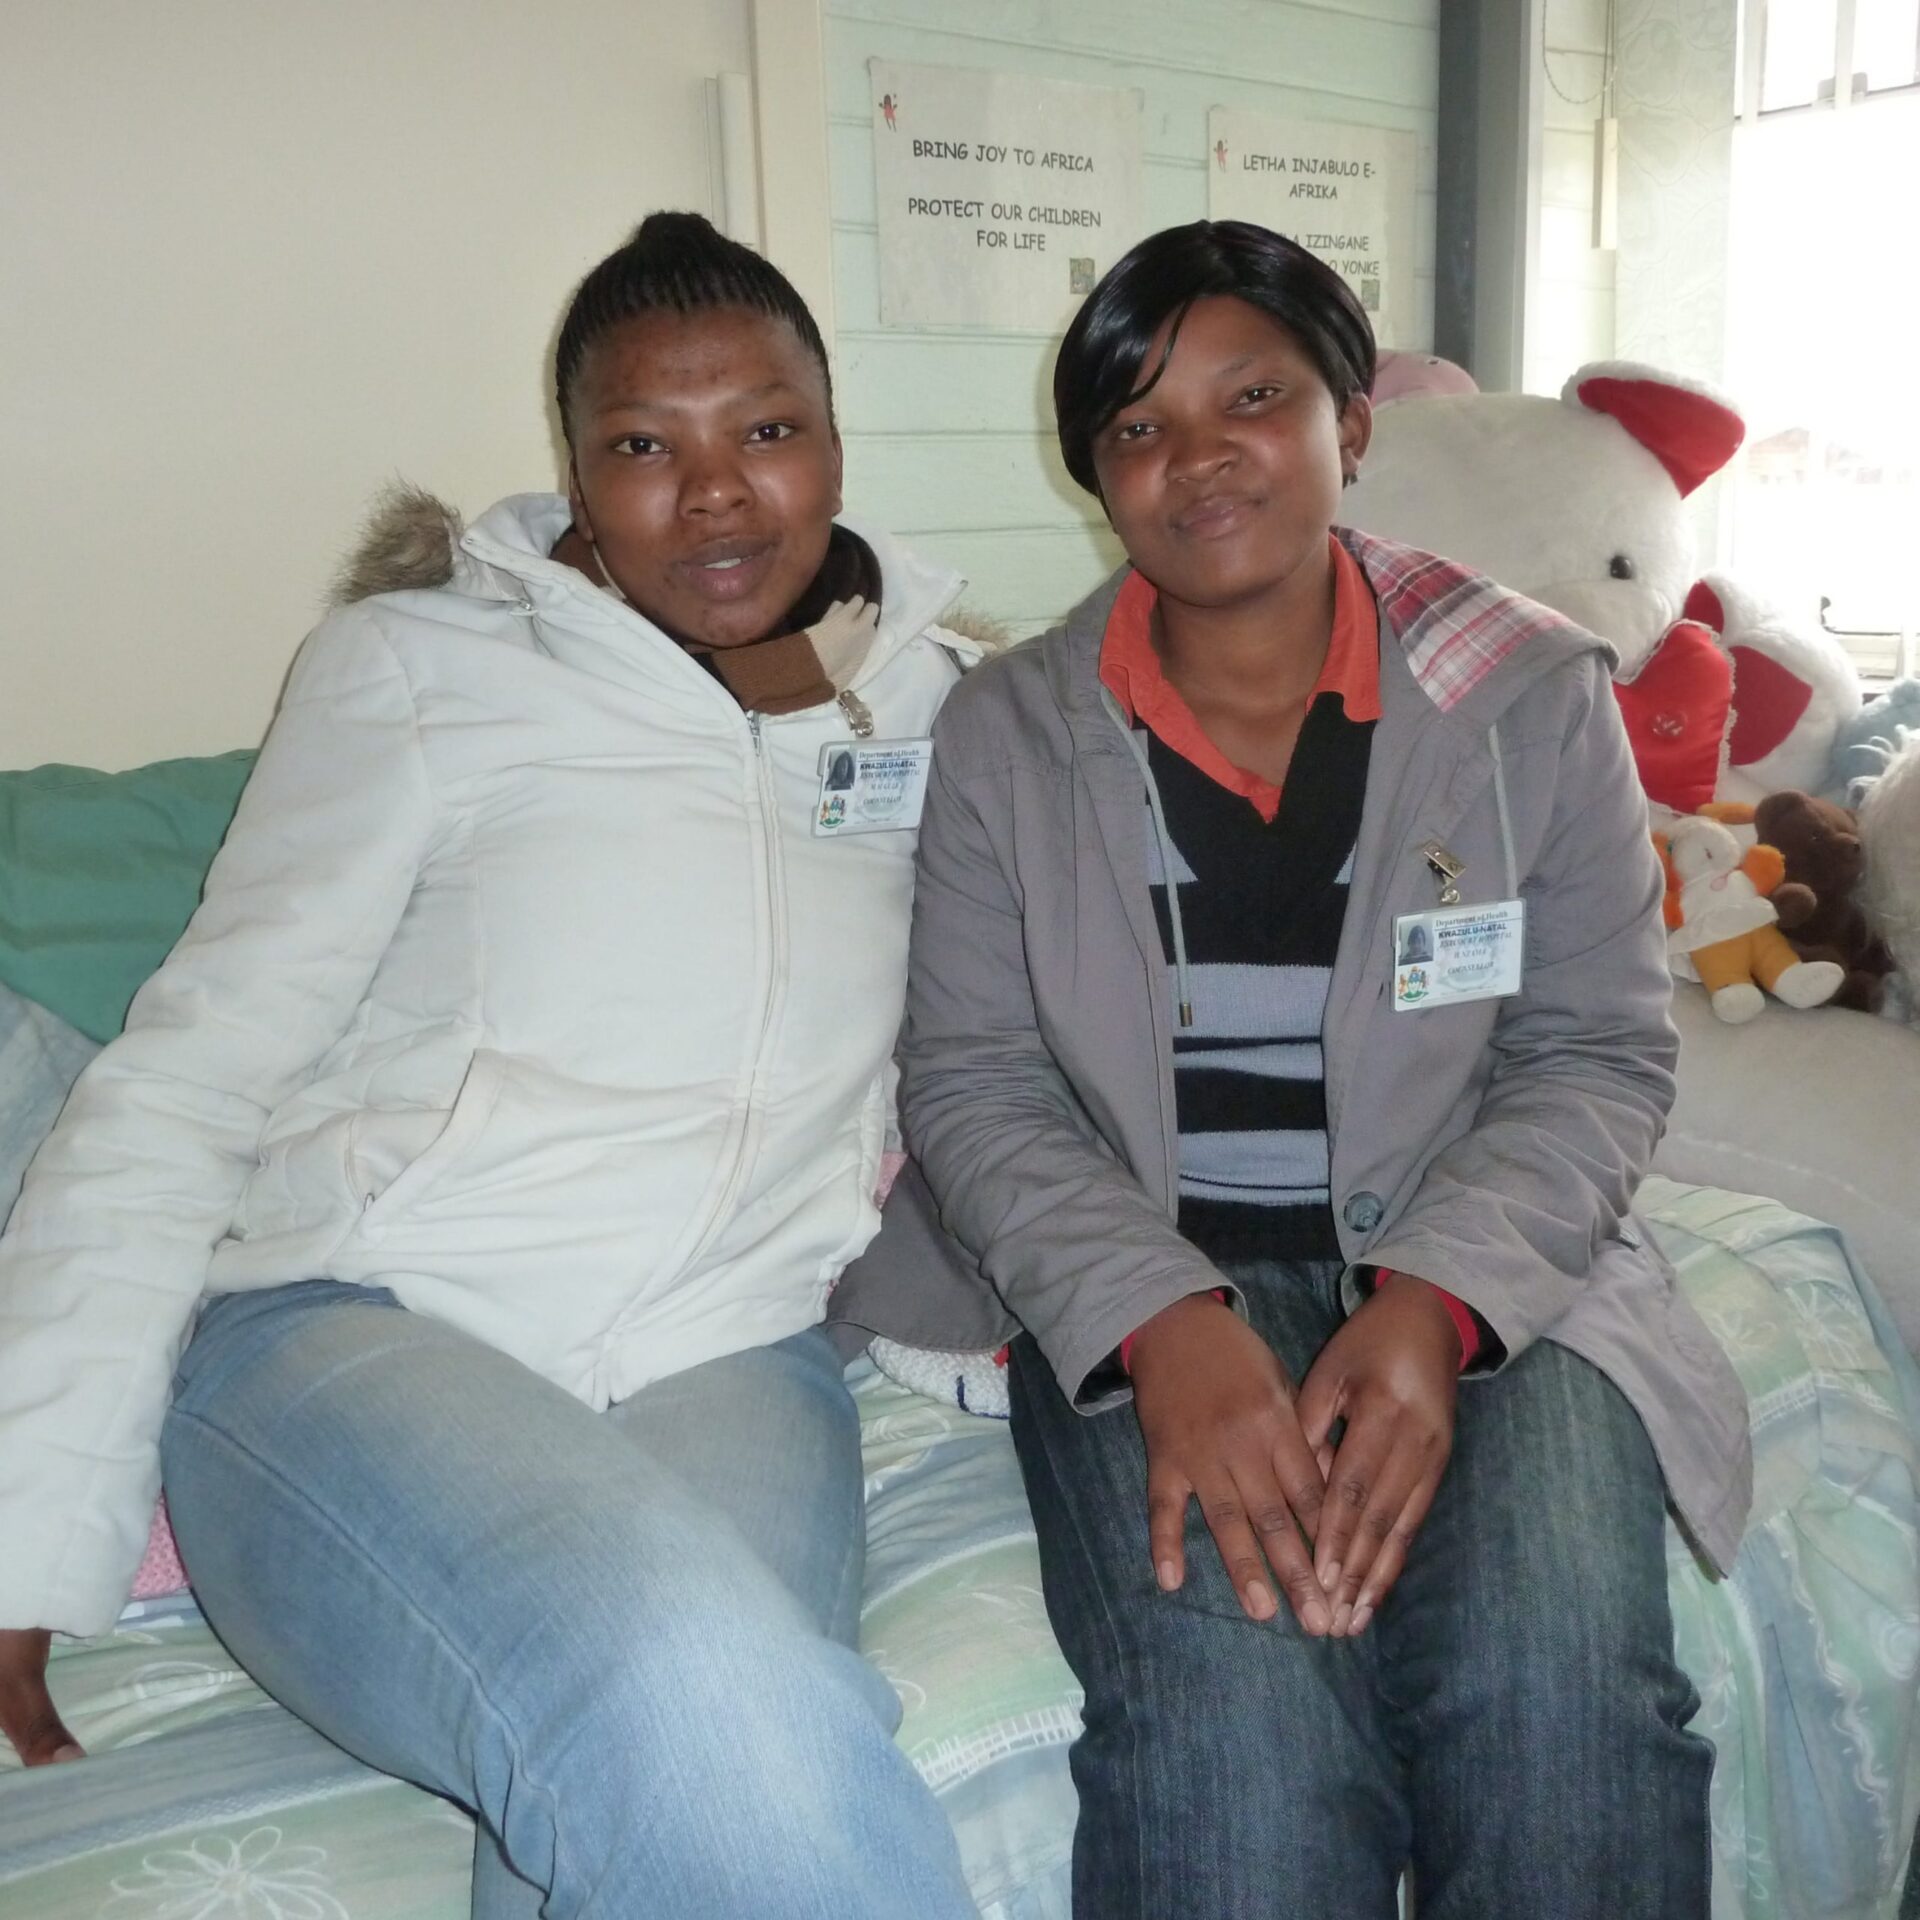 Nondumiso Gule (l.) und Haniffa Nzama (r.) von der südafrikanischen Organisation LifeLine betreuen im von ihnen aufgebauten Krisenzentrum von sexueller Gewalt betroffene Menschen.